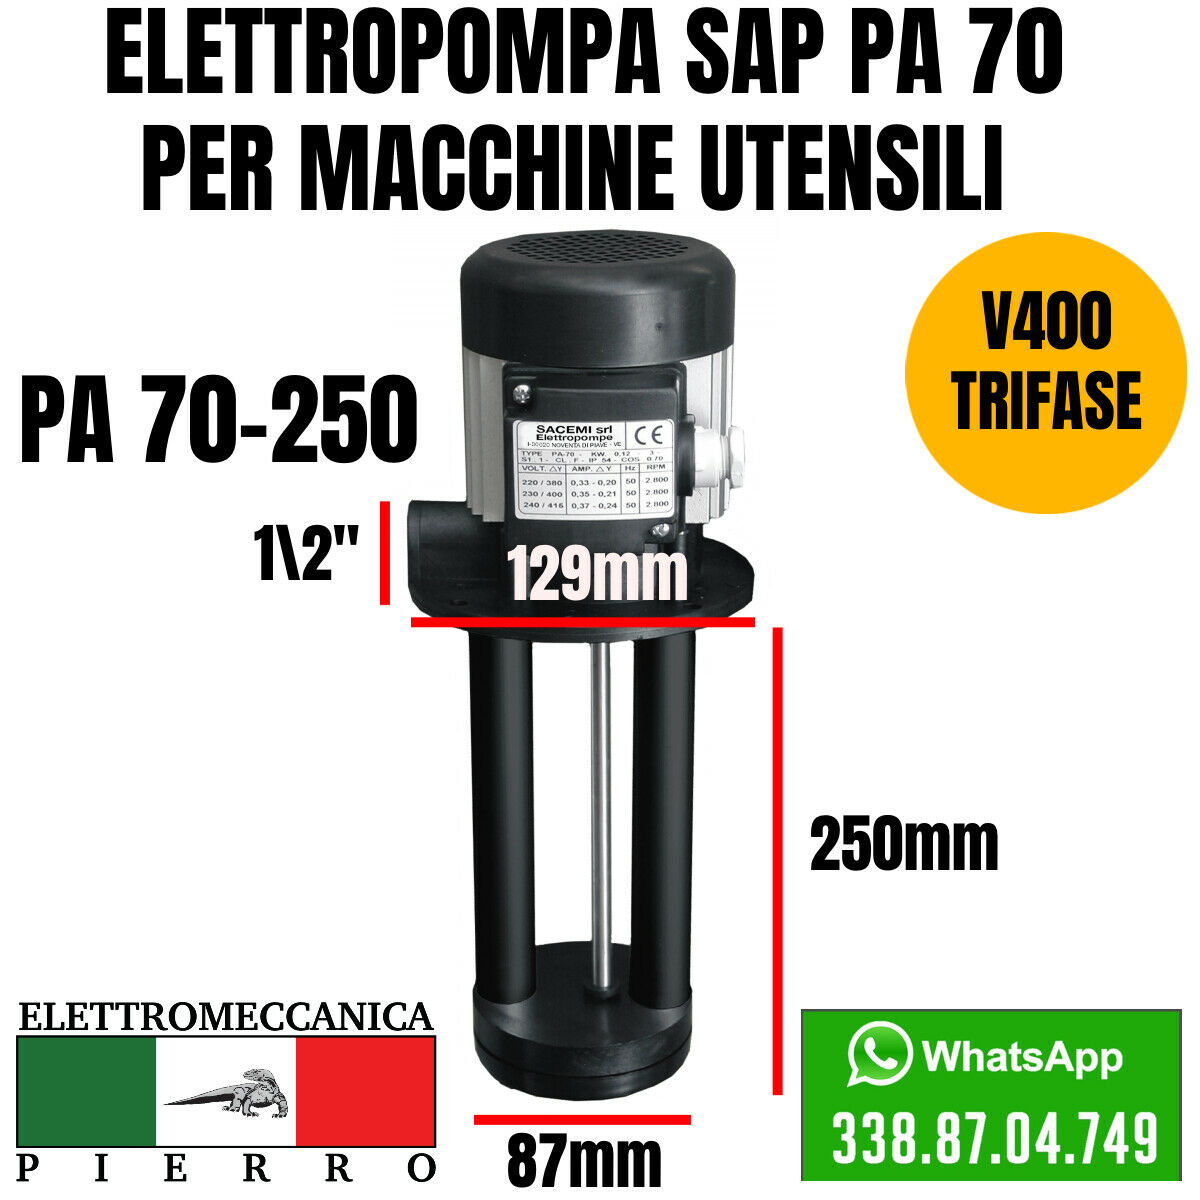 Logo elettromeccanica Pierro elettromeccanica express Elettropompa sacemi per macchine utensili SAP PA 70-250